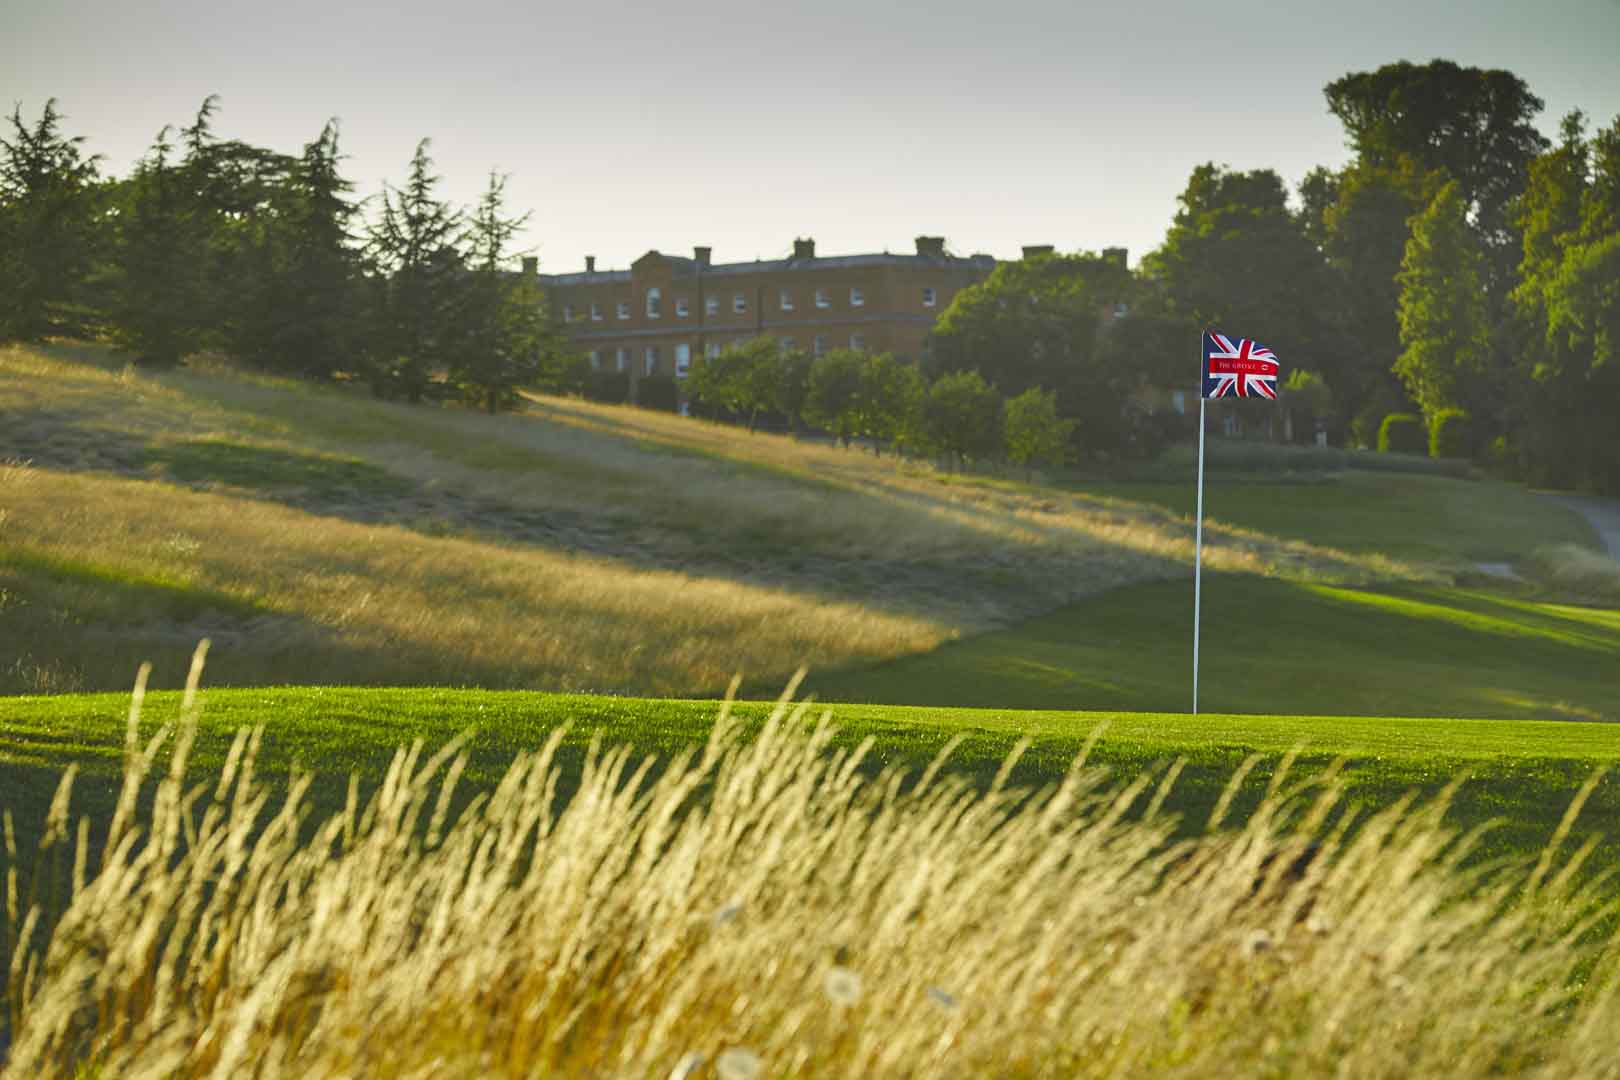 The Grove: Flott golfsvæði nærri London